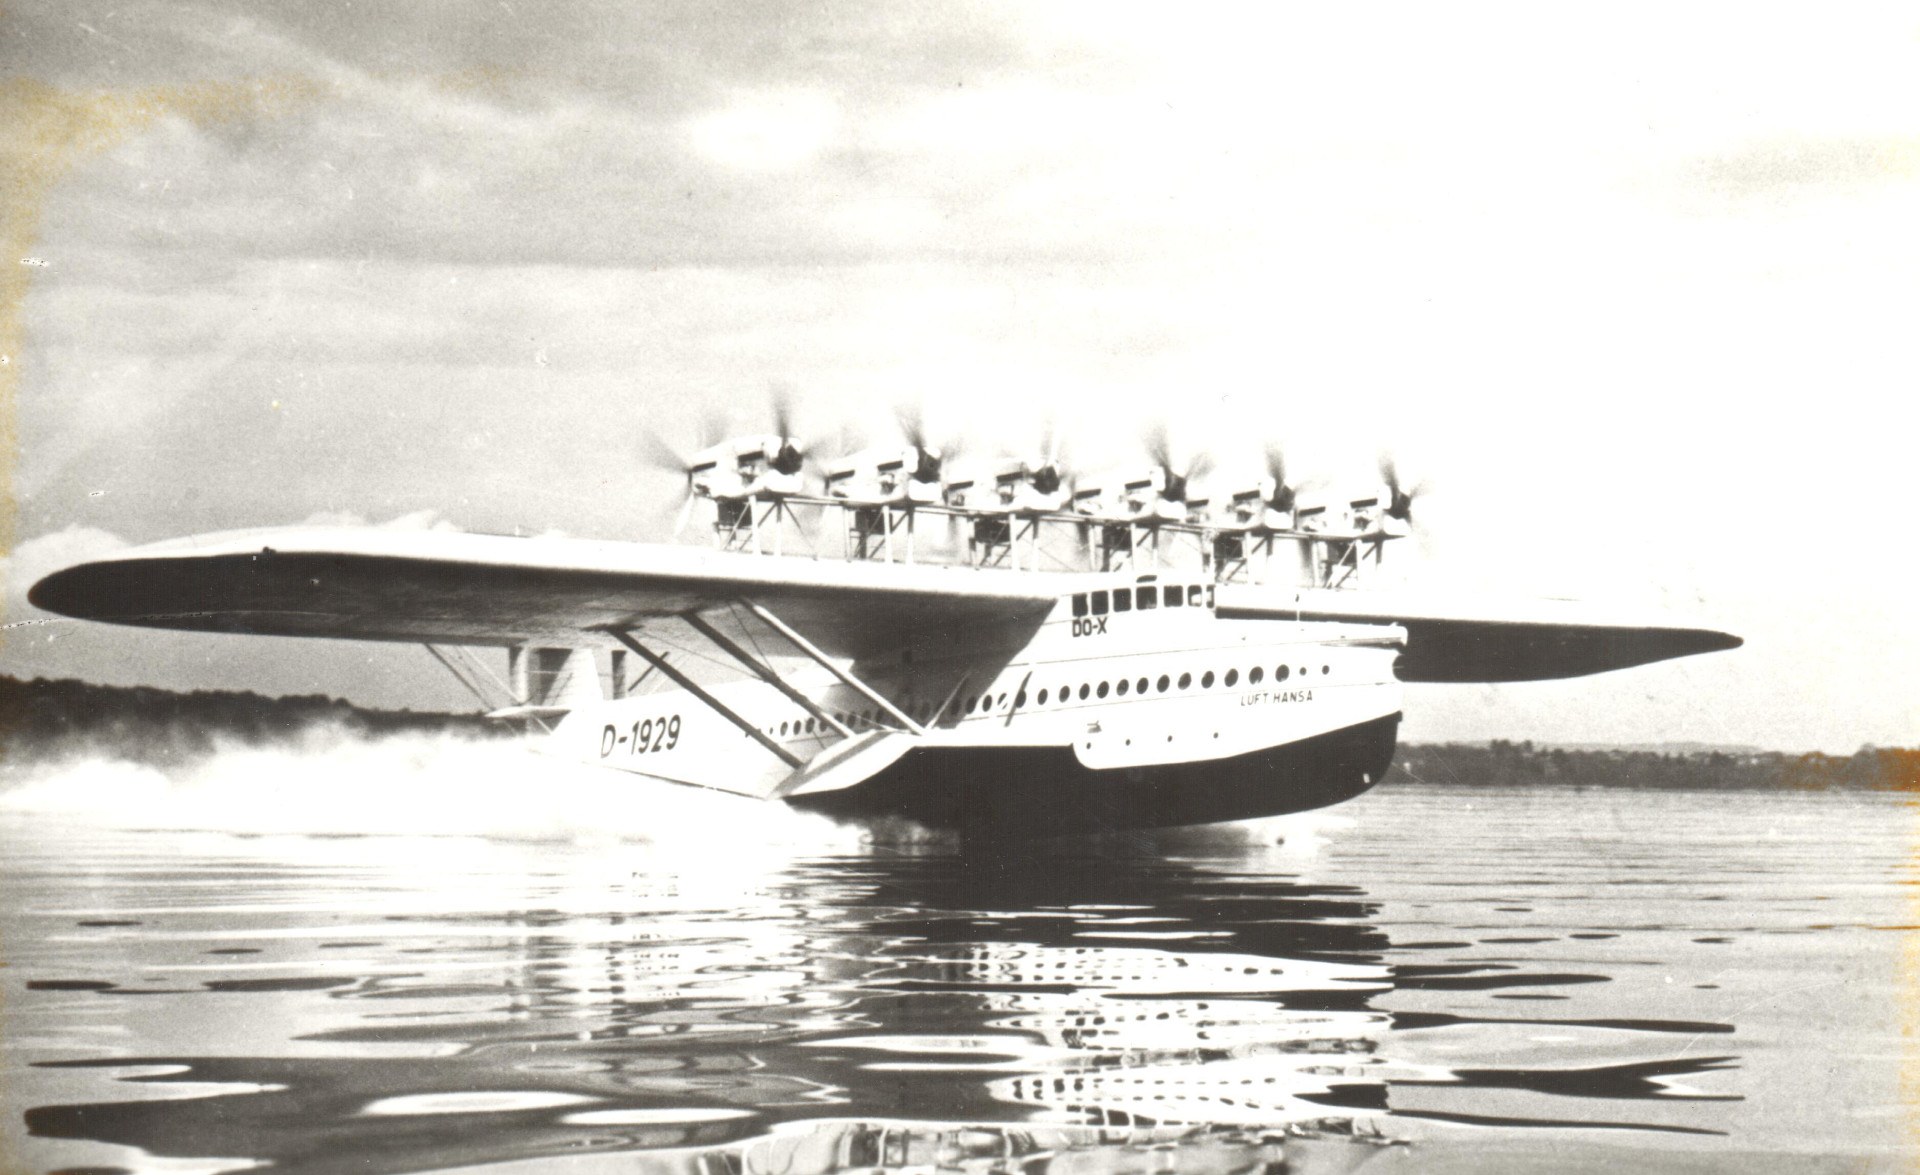 The Dornier X luxury seaplane